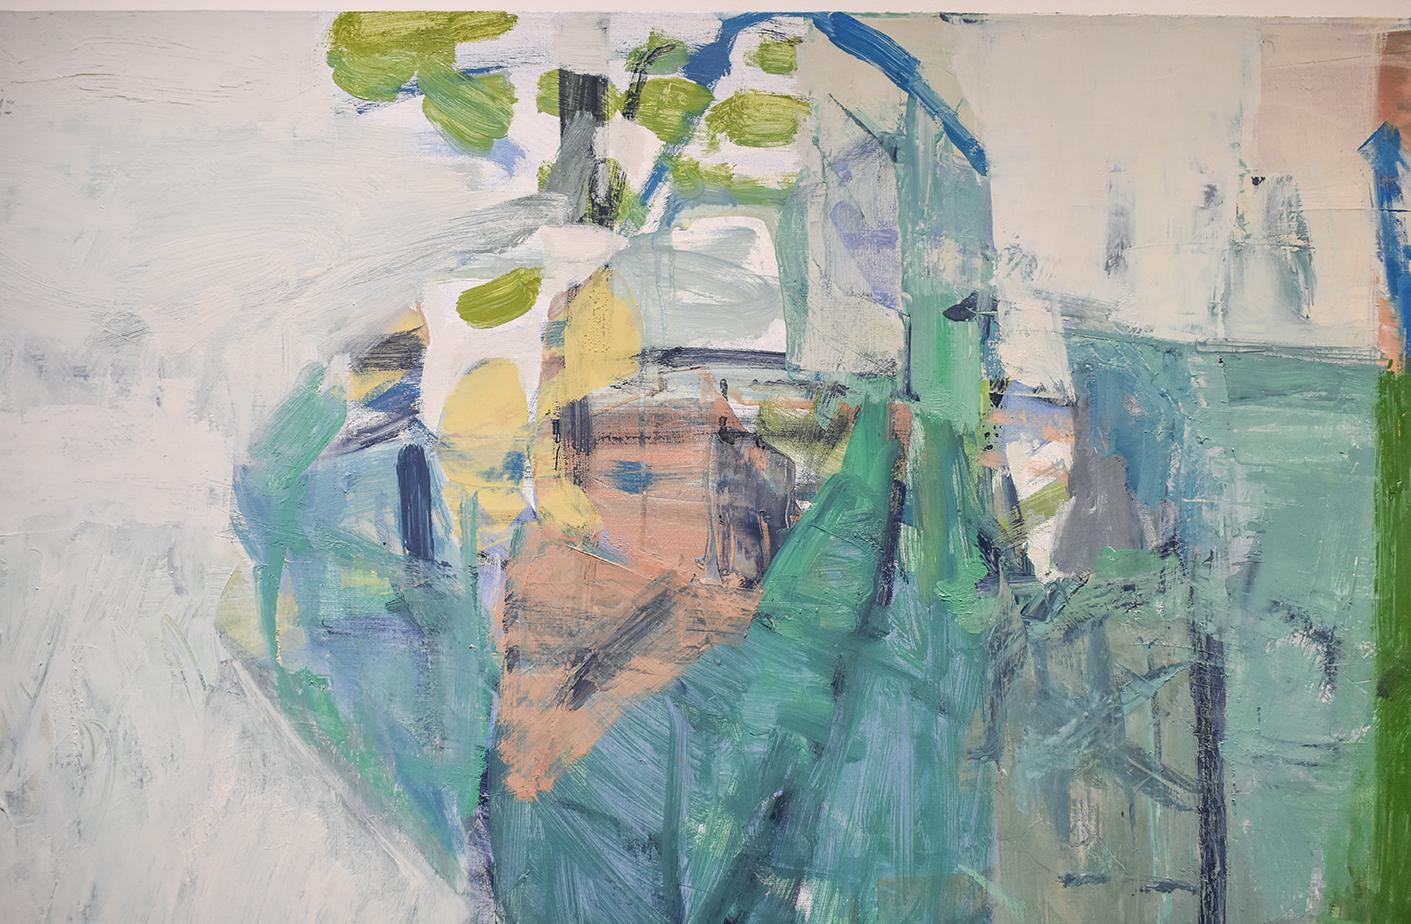 Quadratisches, abstraktes, expressionistisches Ölgemälde auf Leinwand in Aqua, Teal, Blau und Grün auf hellem Grau mit Akzenten in Gelb, Pfirsich und Mauve
Delta